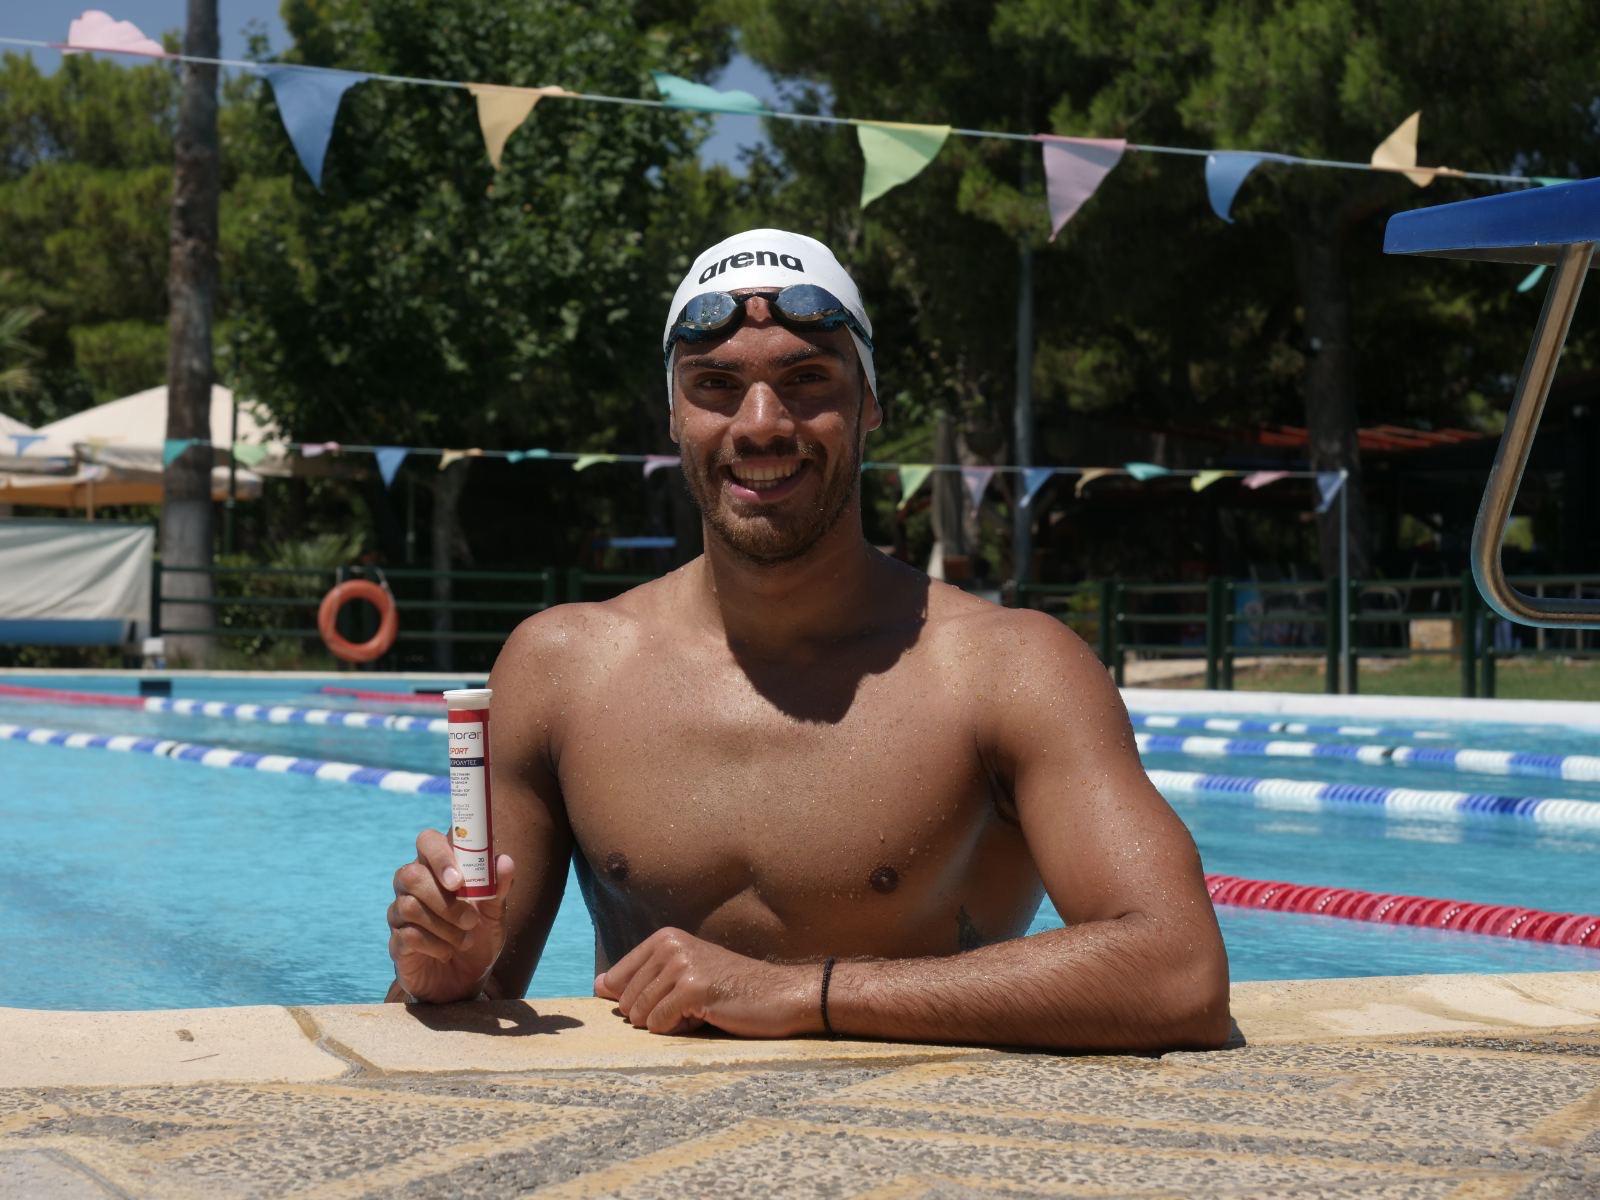 Πρεσβευτής του κορυφαίου εξειδικευμένου συμπληρώματος διατροφής ο Πρωταθλητής κολύμβησης Ανδρέας Βαζαίος